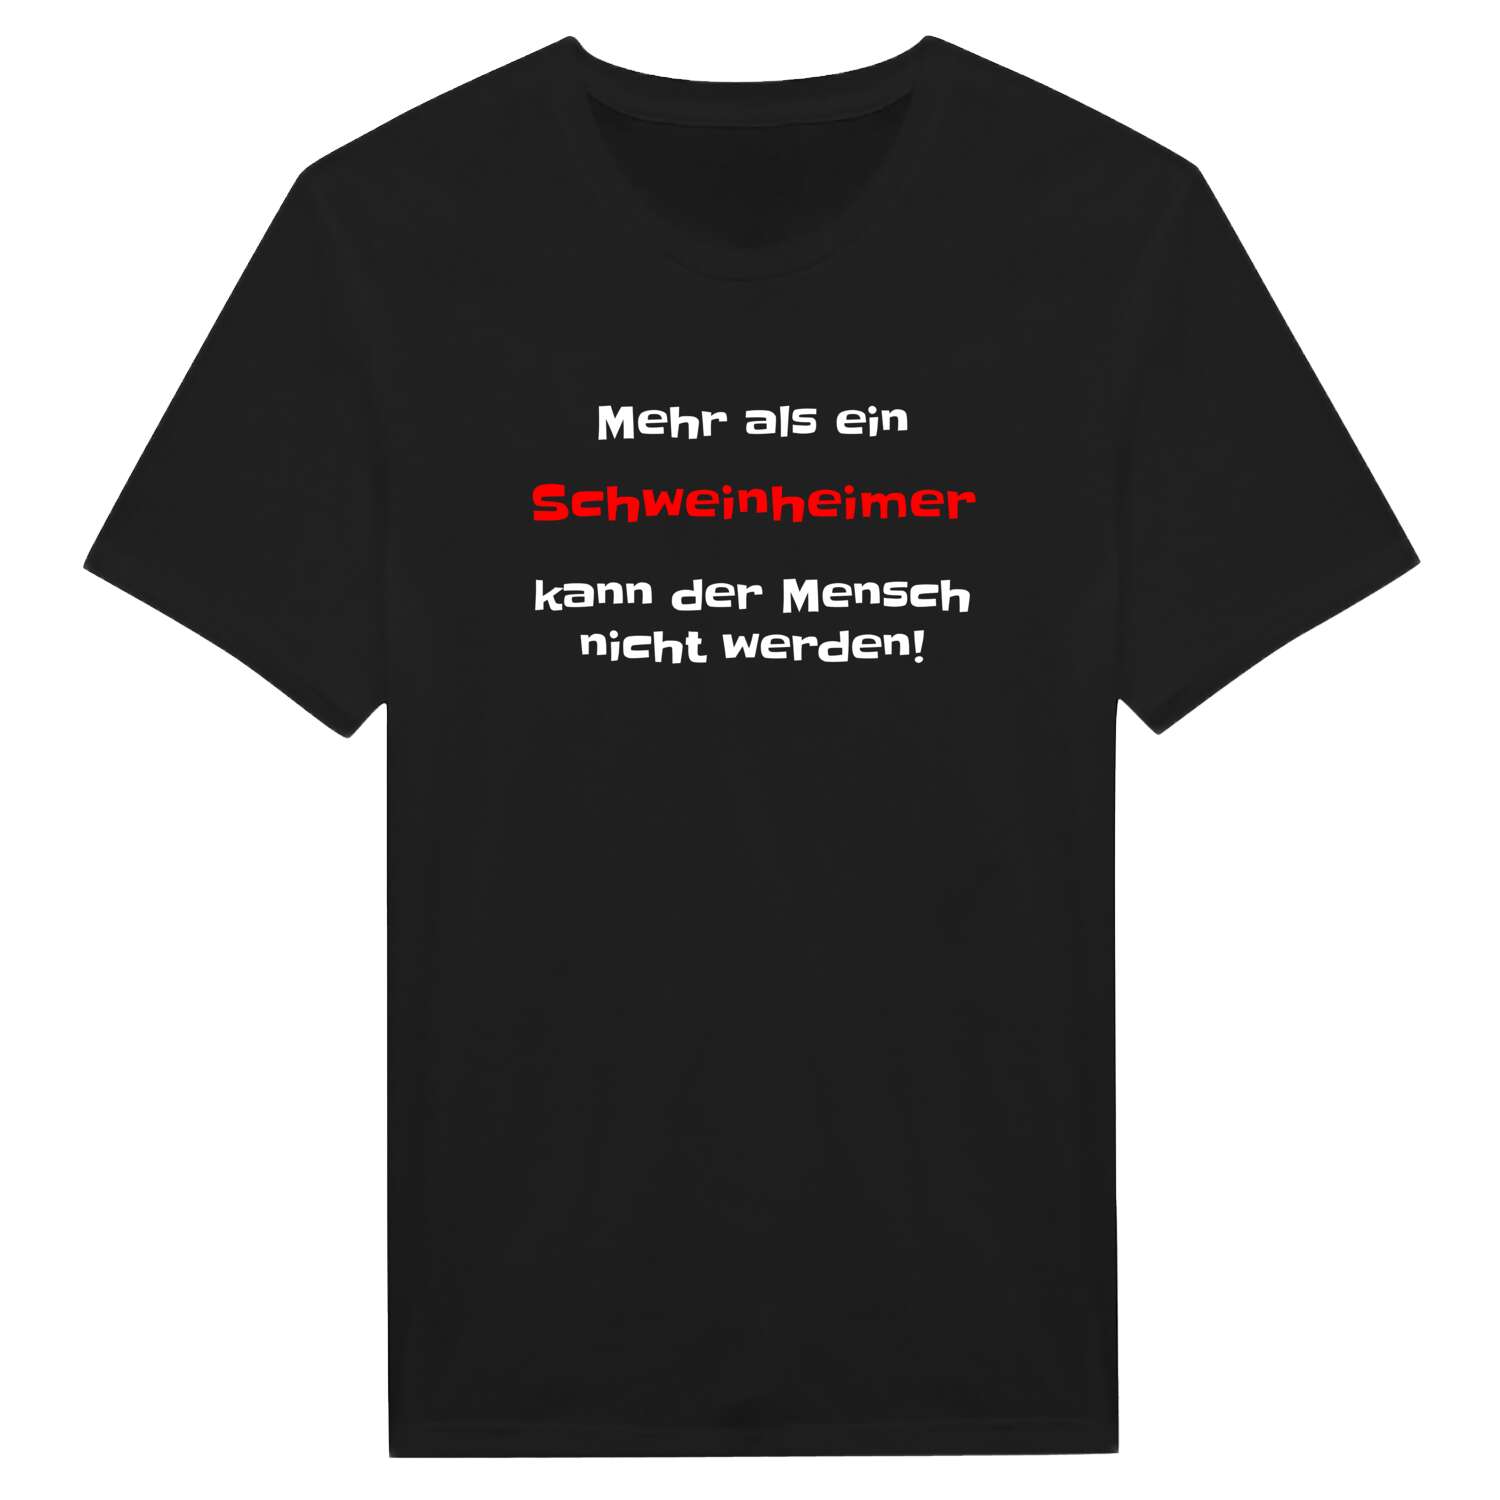 Schweinheim T-Shirt »Mehr als ein«